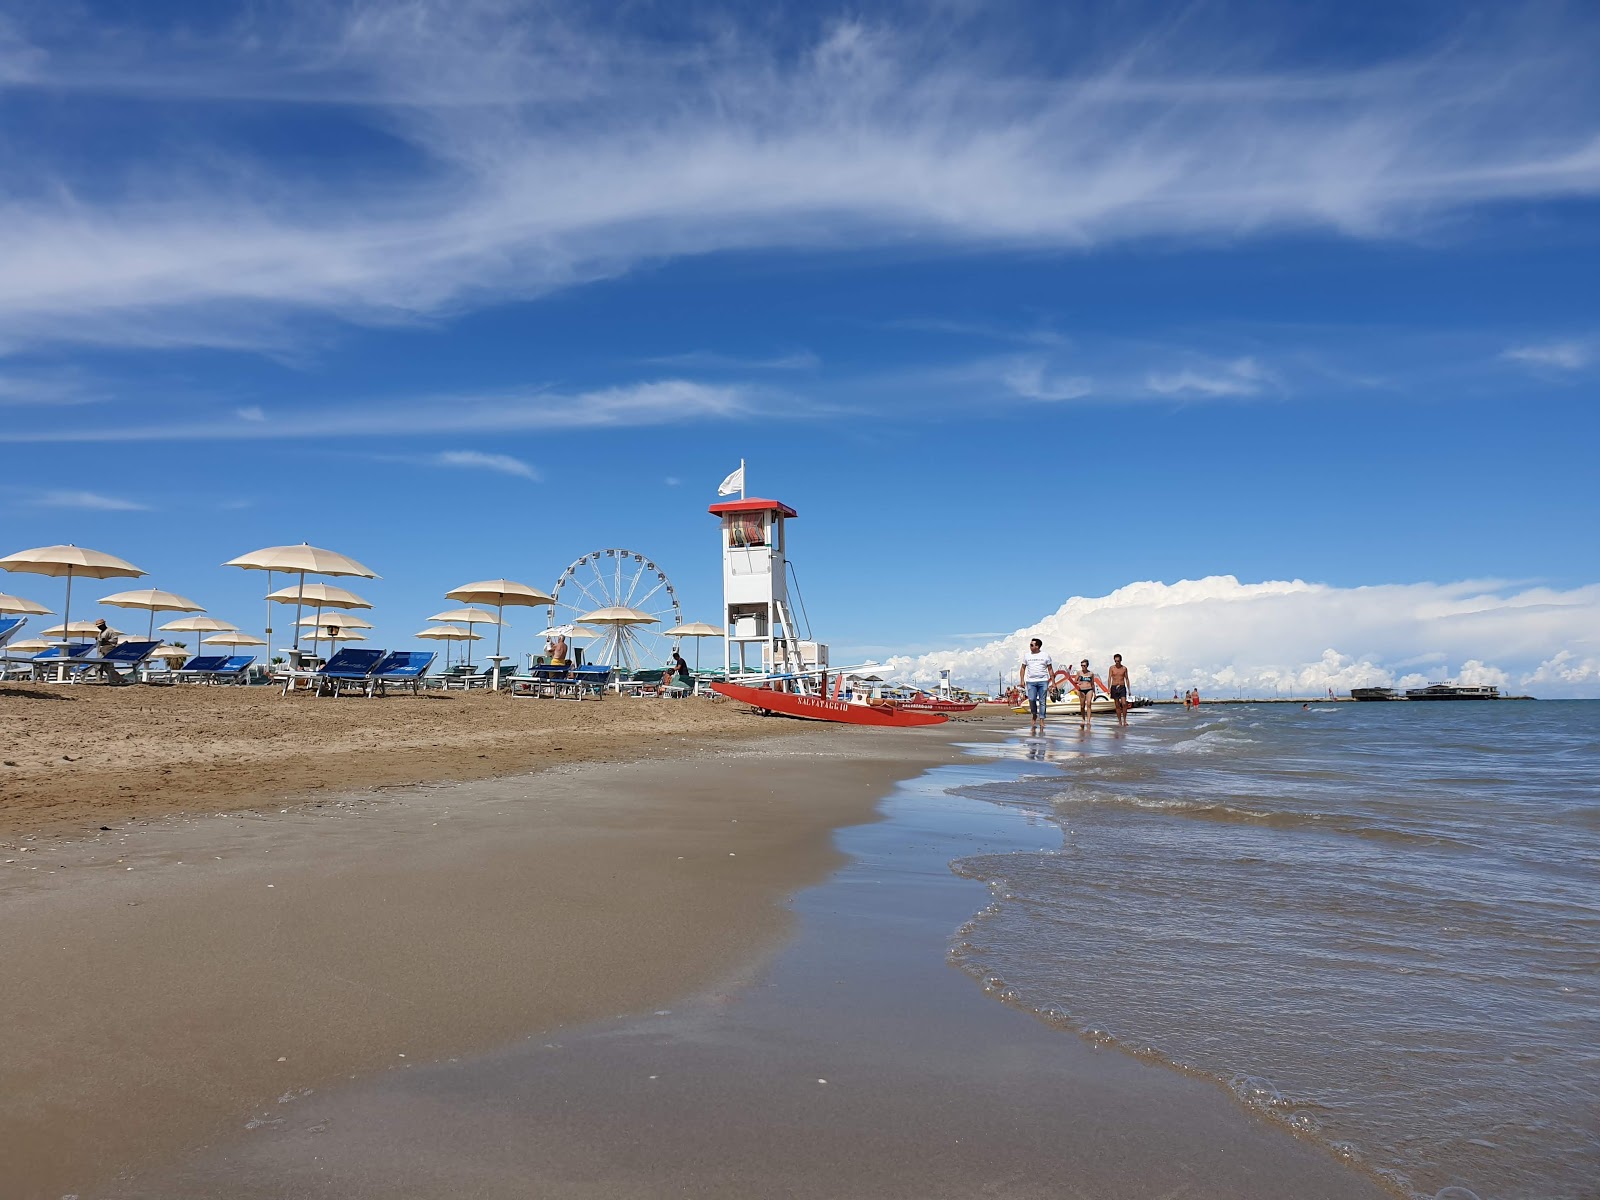 Fotografie cu Rimini beach cu o suprafață de nisip fin strălucitor